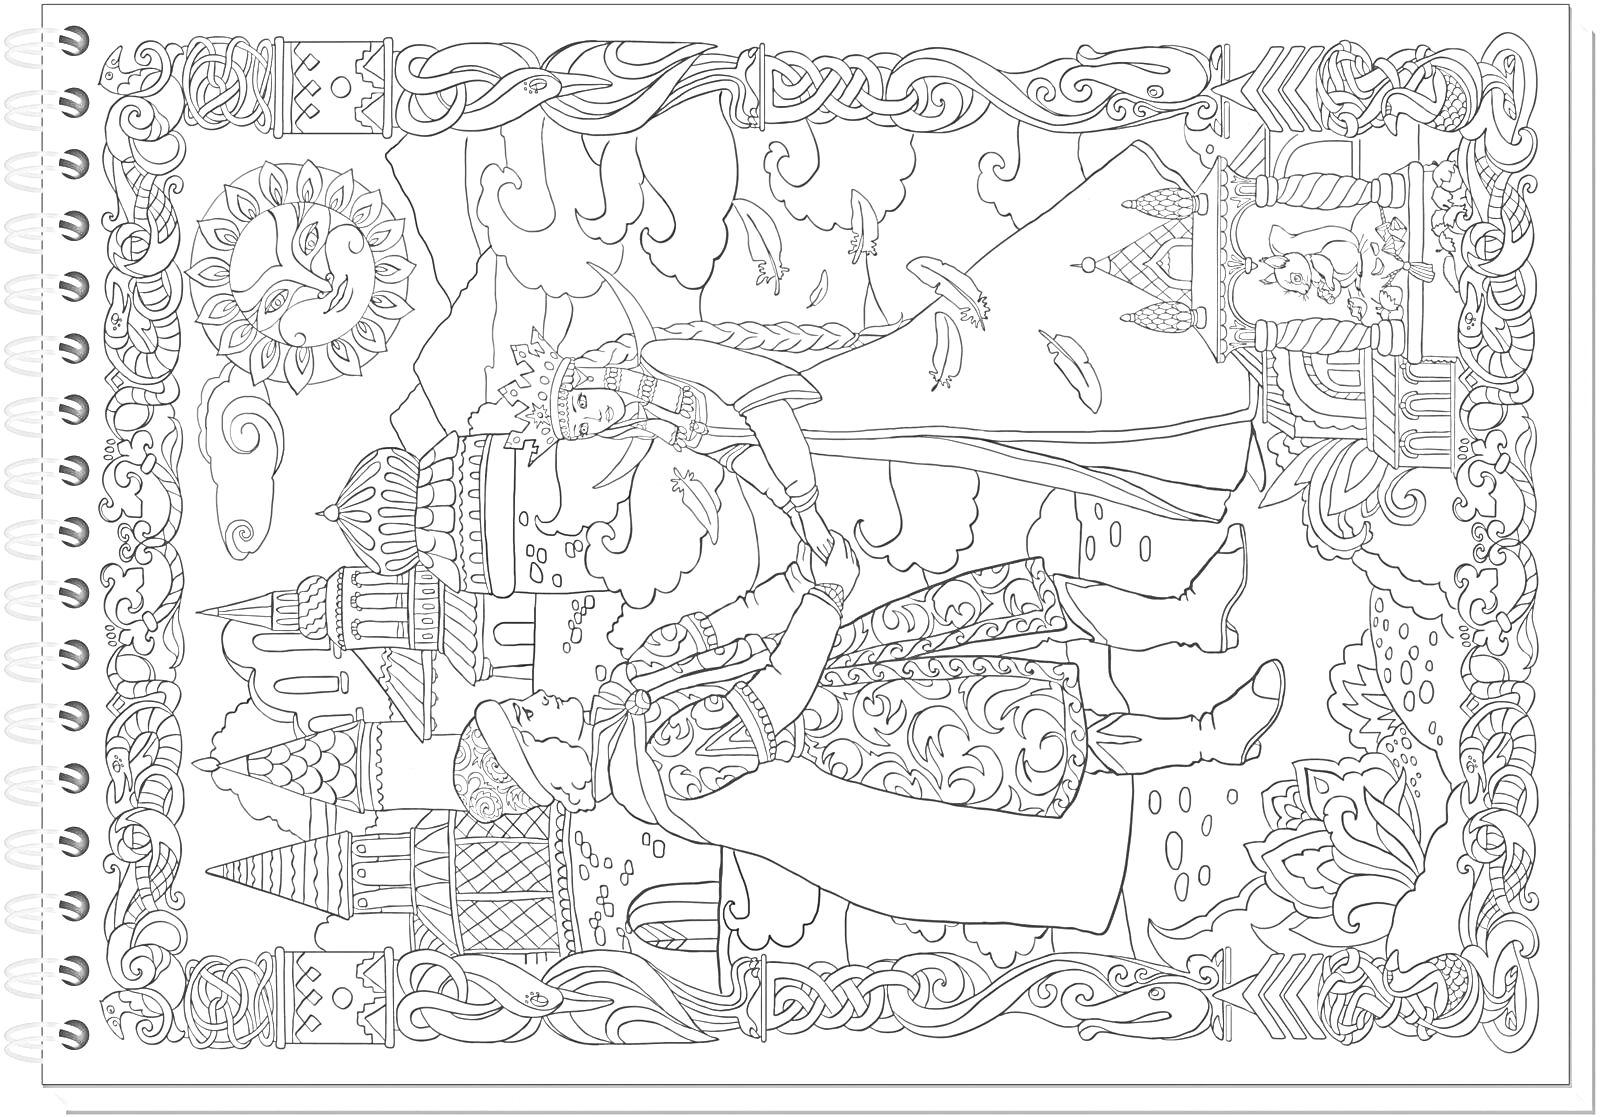 Раскраска У лукоморья дуб зеленый - медведь, царь, царевна, руки, замок, сияющее солнце, плетеная рама